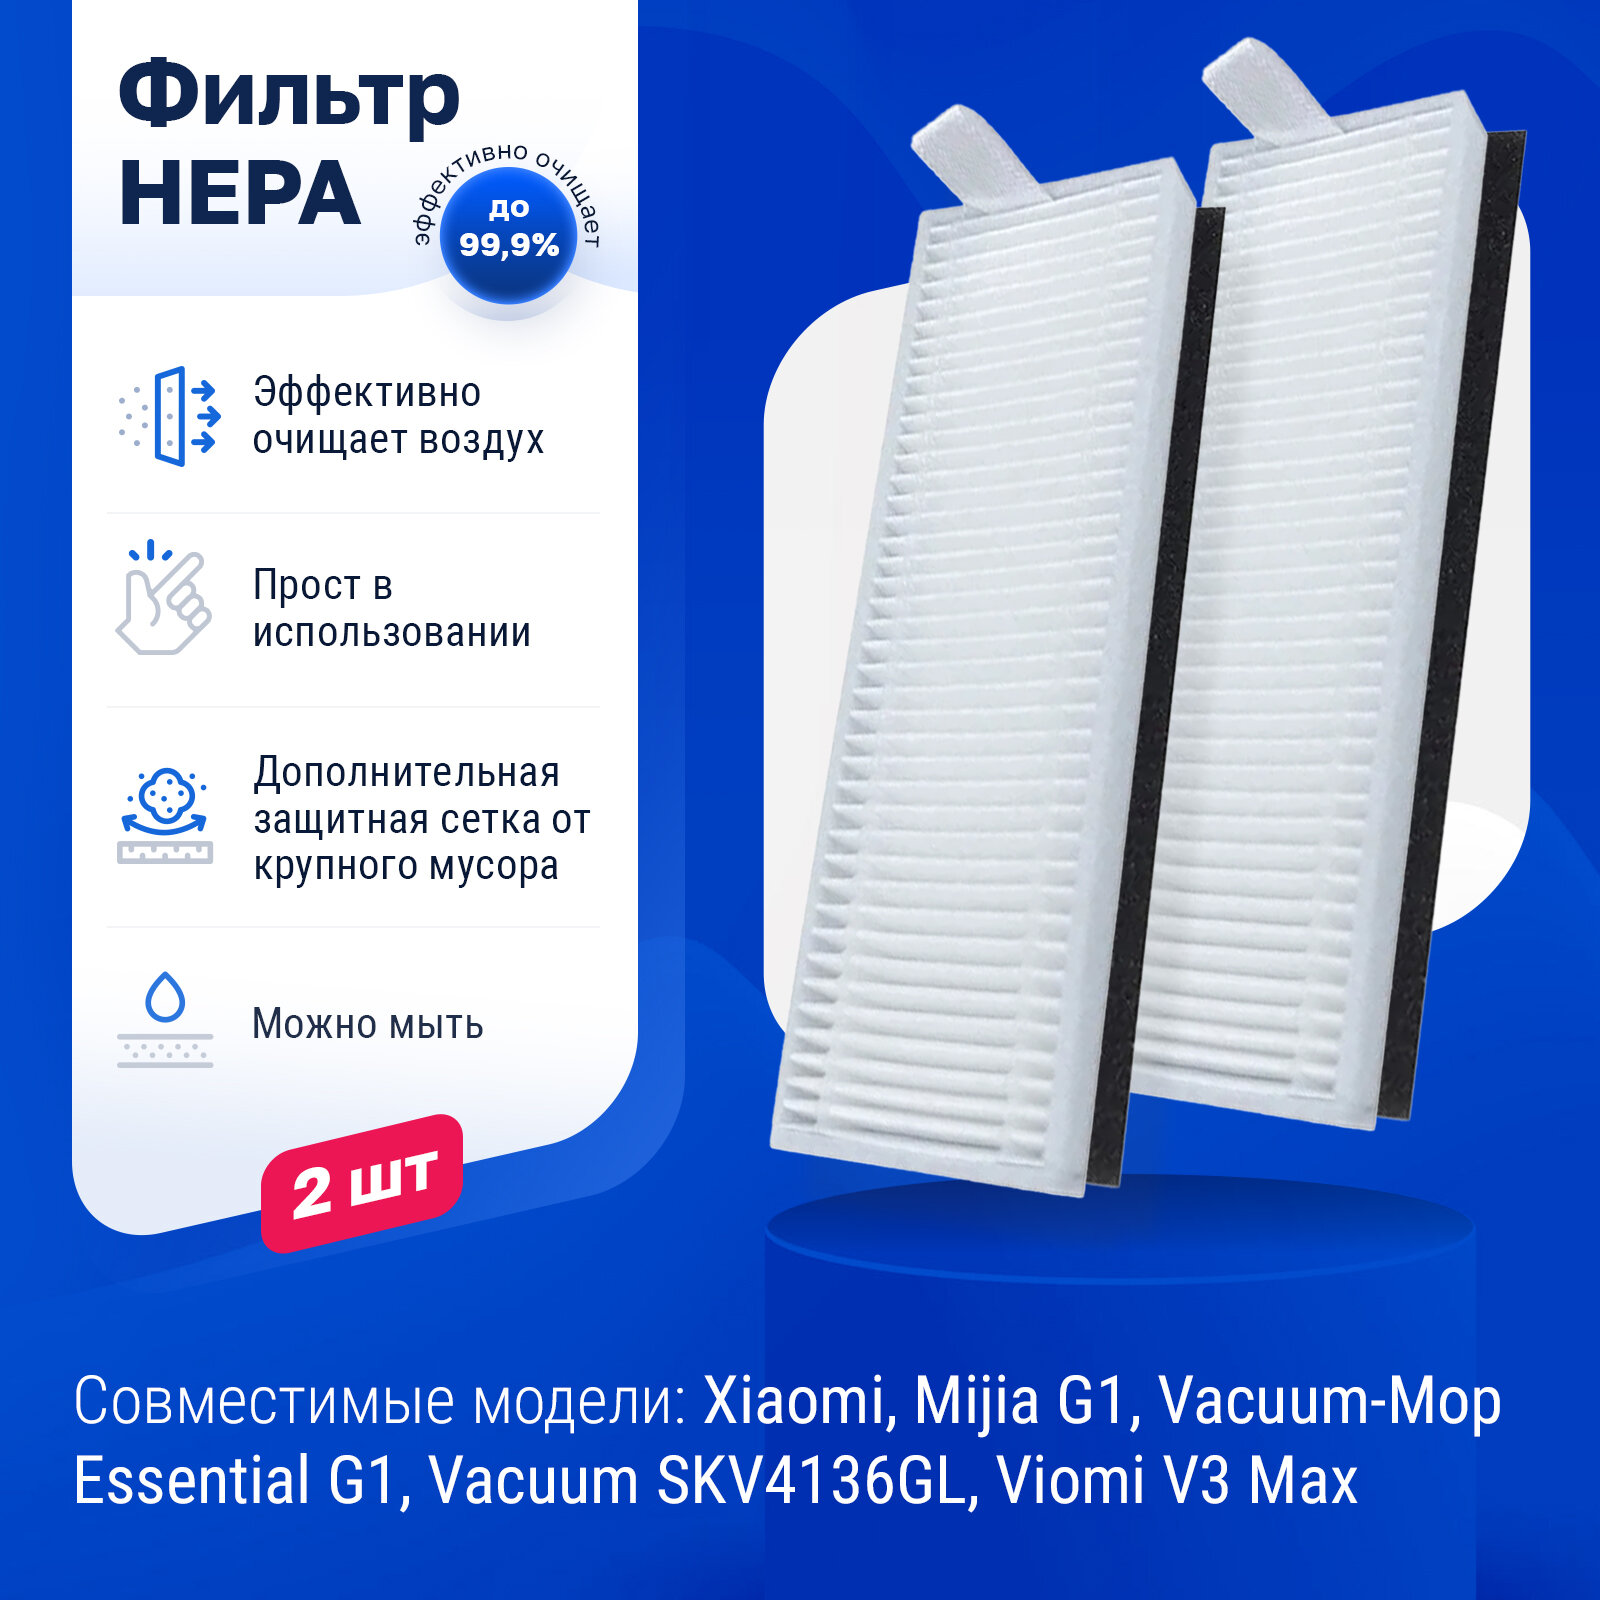 Комплект фильтров для робота пылесоса Xiaomi, Mijia G1, Vacuum-Mop Essential G1, Vacuum SKV4136GL - 2 шт